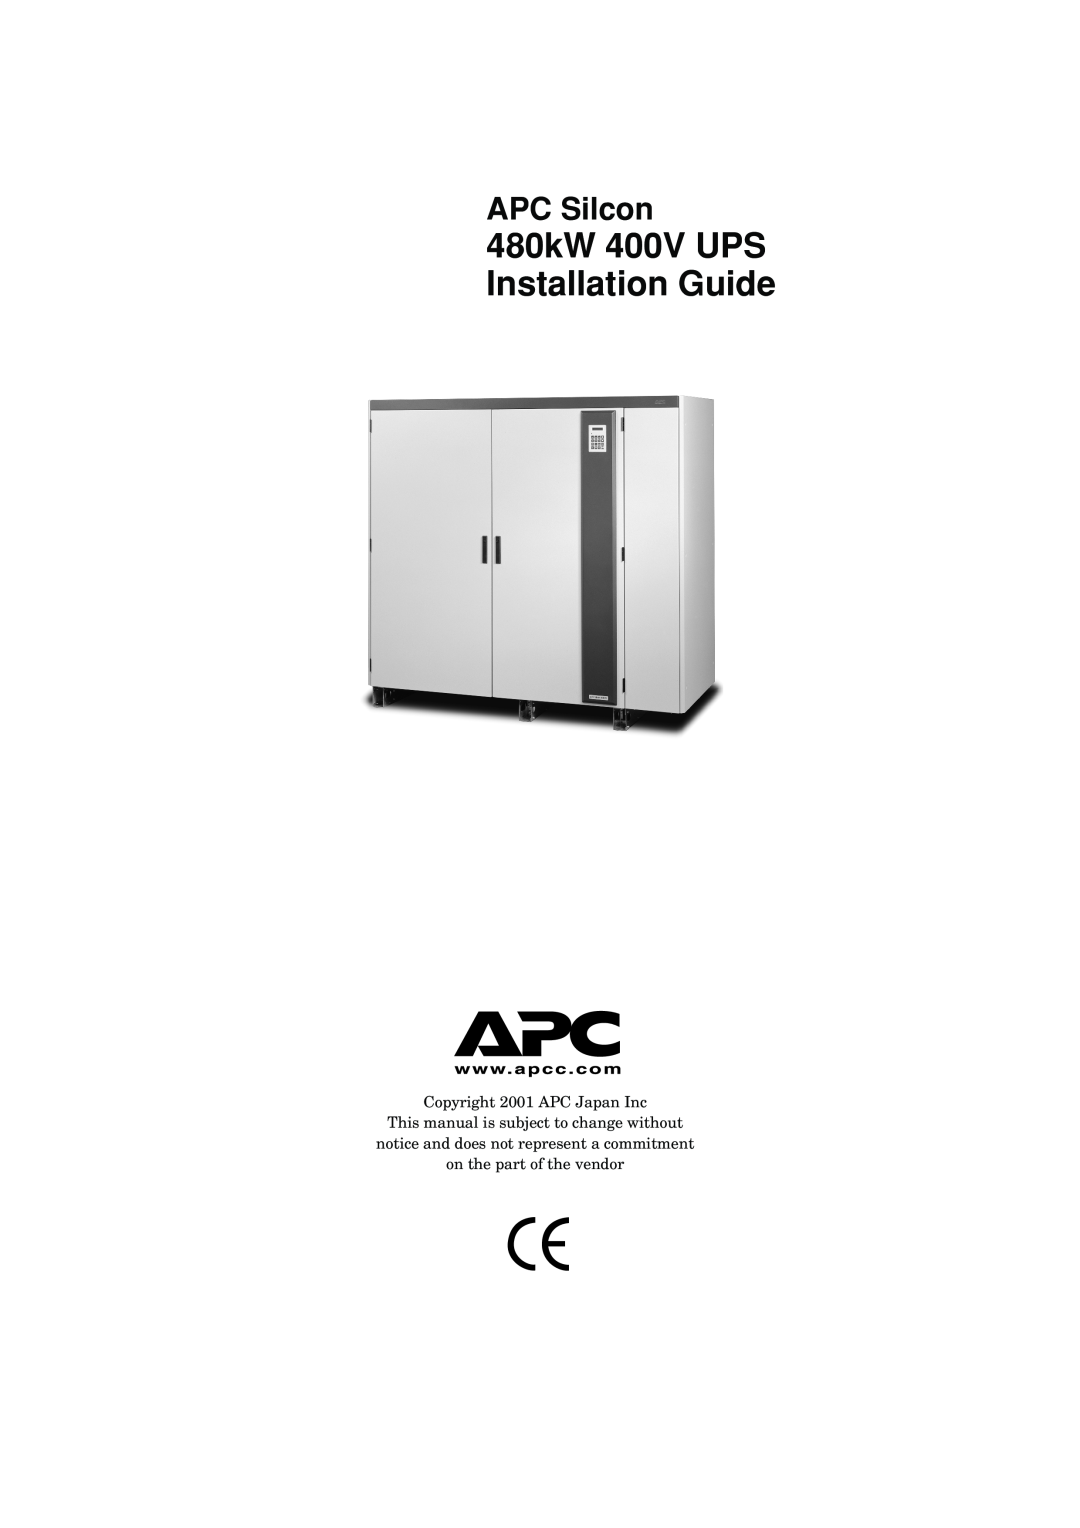 American Power Conversion manual 480kW 400V UPS Installation Guide, APC Silcon 